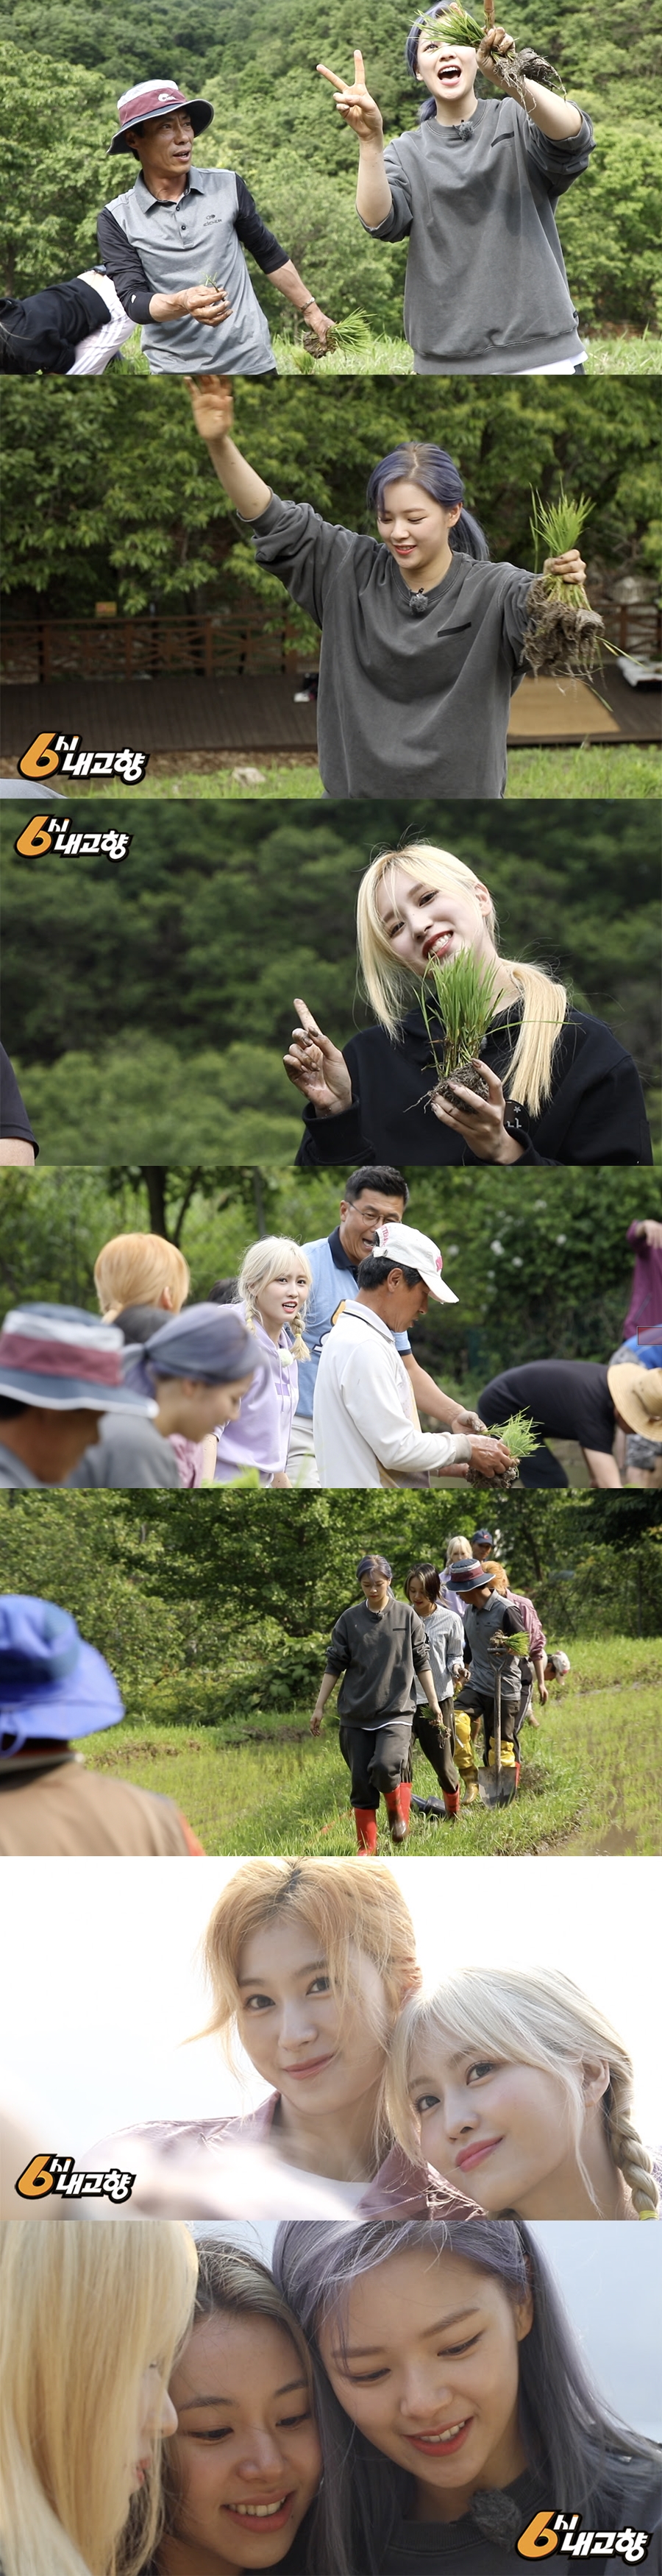 트와이스, '6시 내고향' 출연 / 사진: KBS 제공